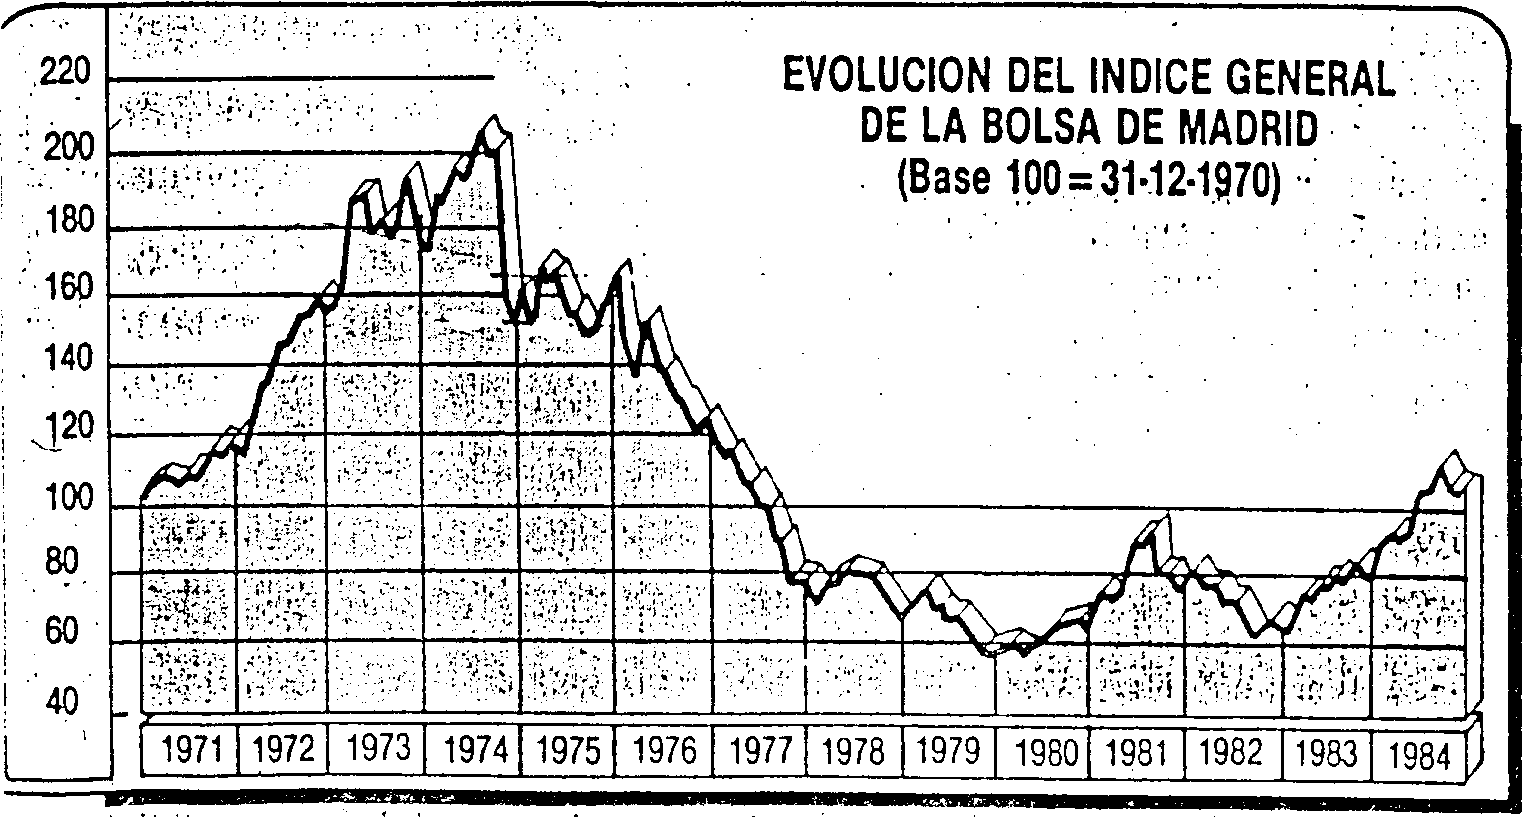 Cuadro 3. Evolución del índice general de la Bolsa de Madrid desde 1971 hasta 1984.